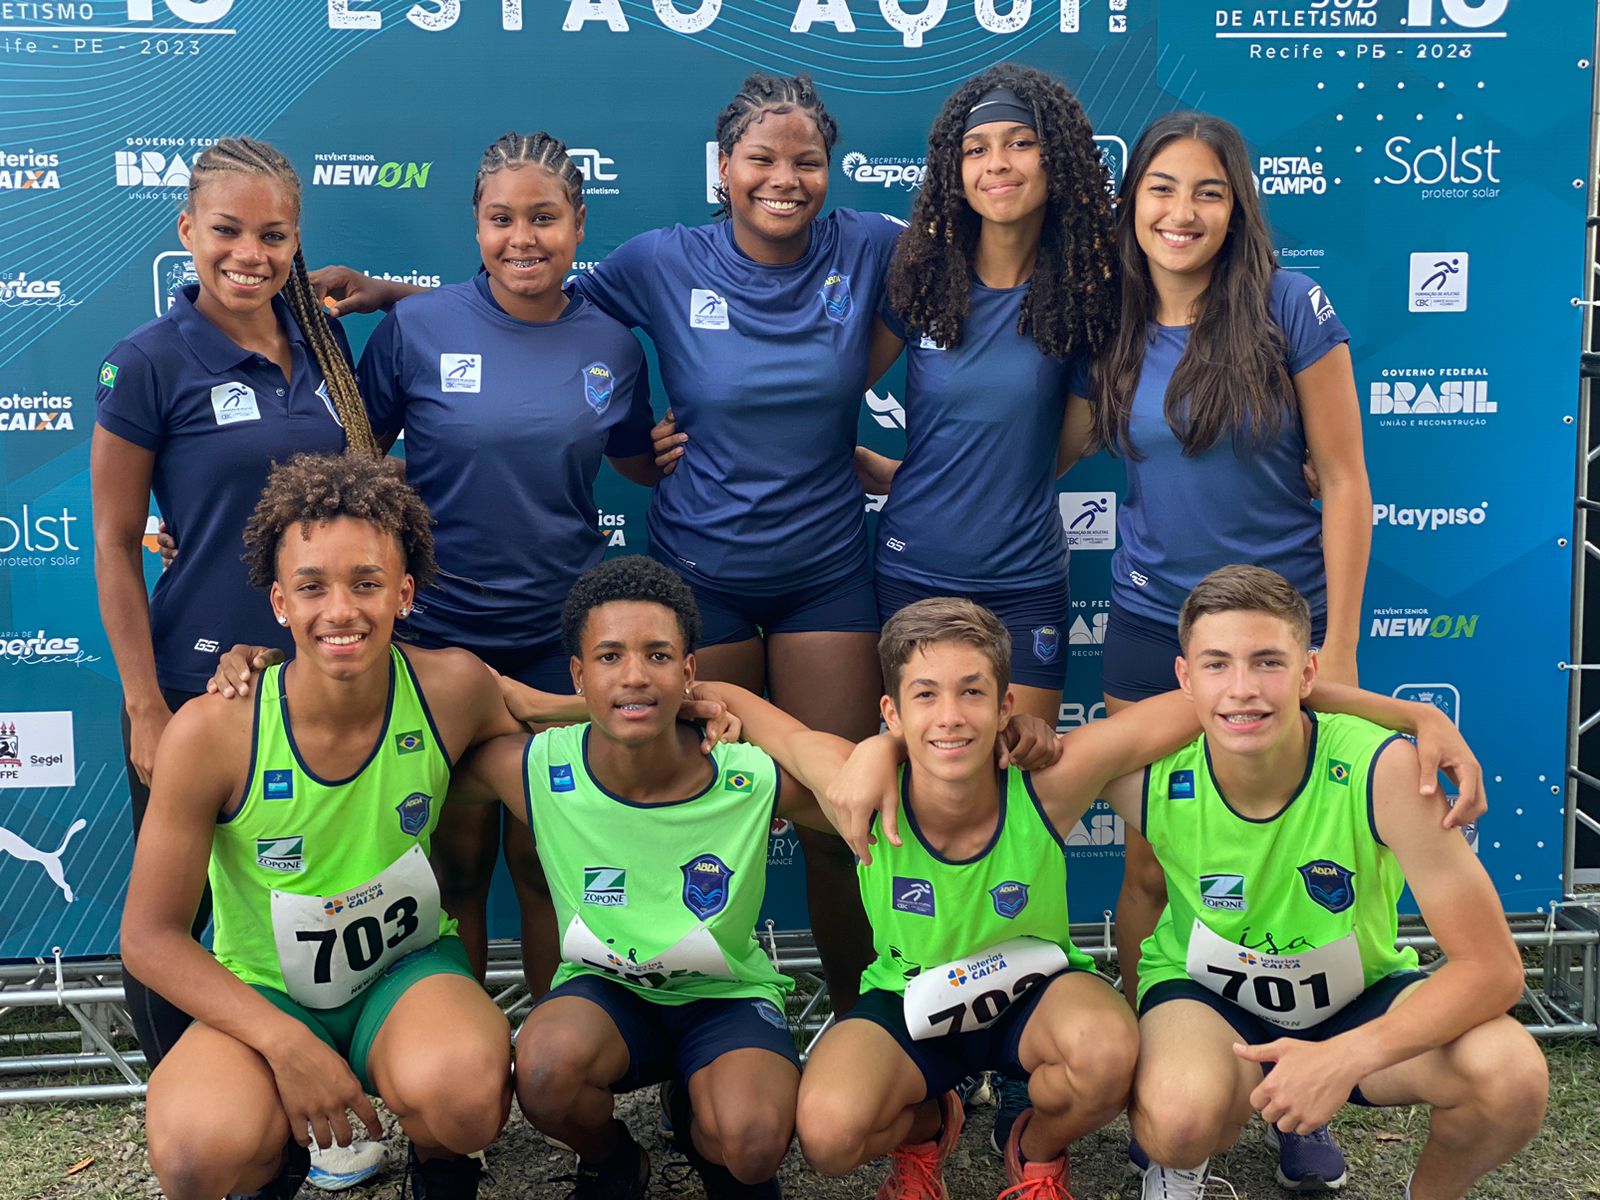 ABDA participa com 8 atletas do Campeonato Brasileiro Sub-16 de atletismo